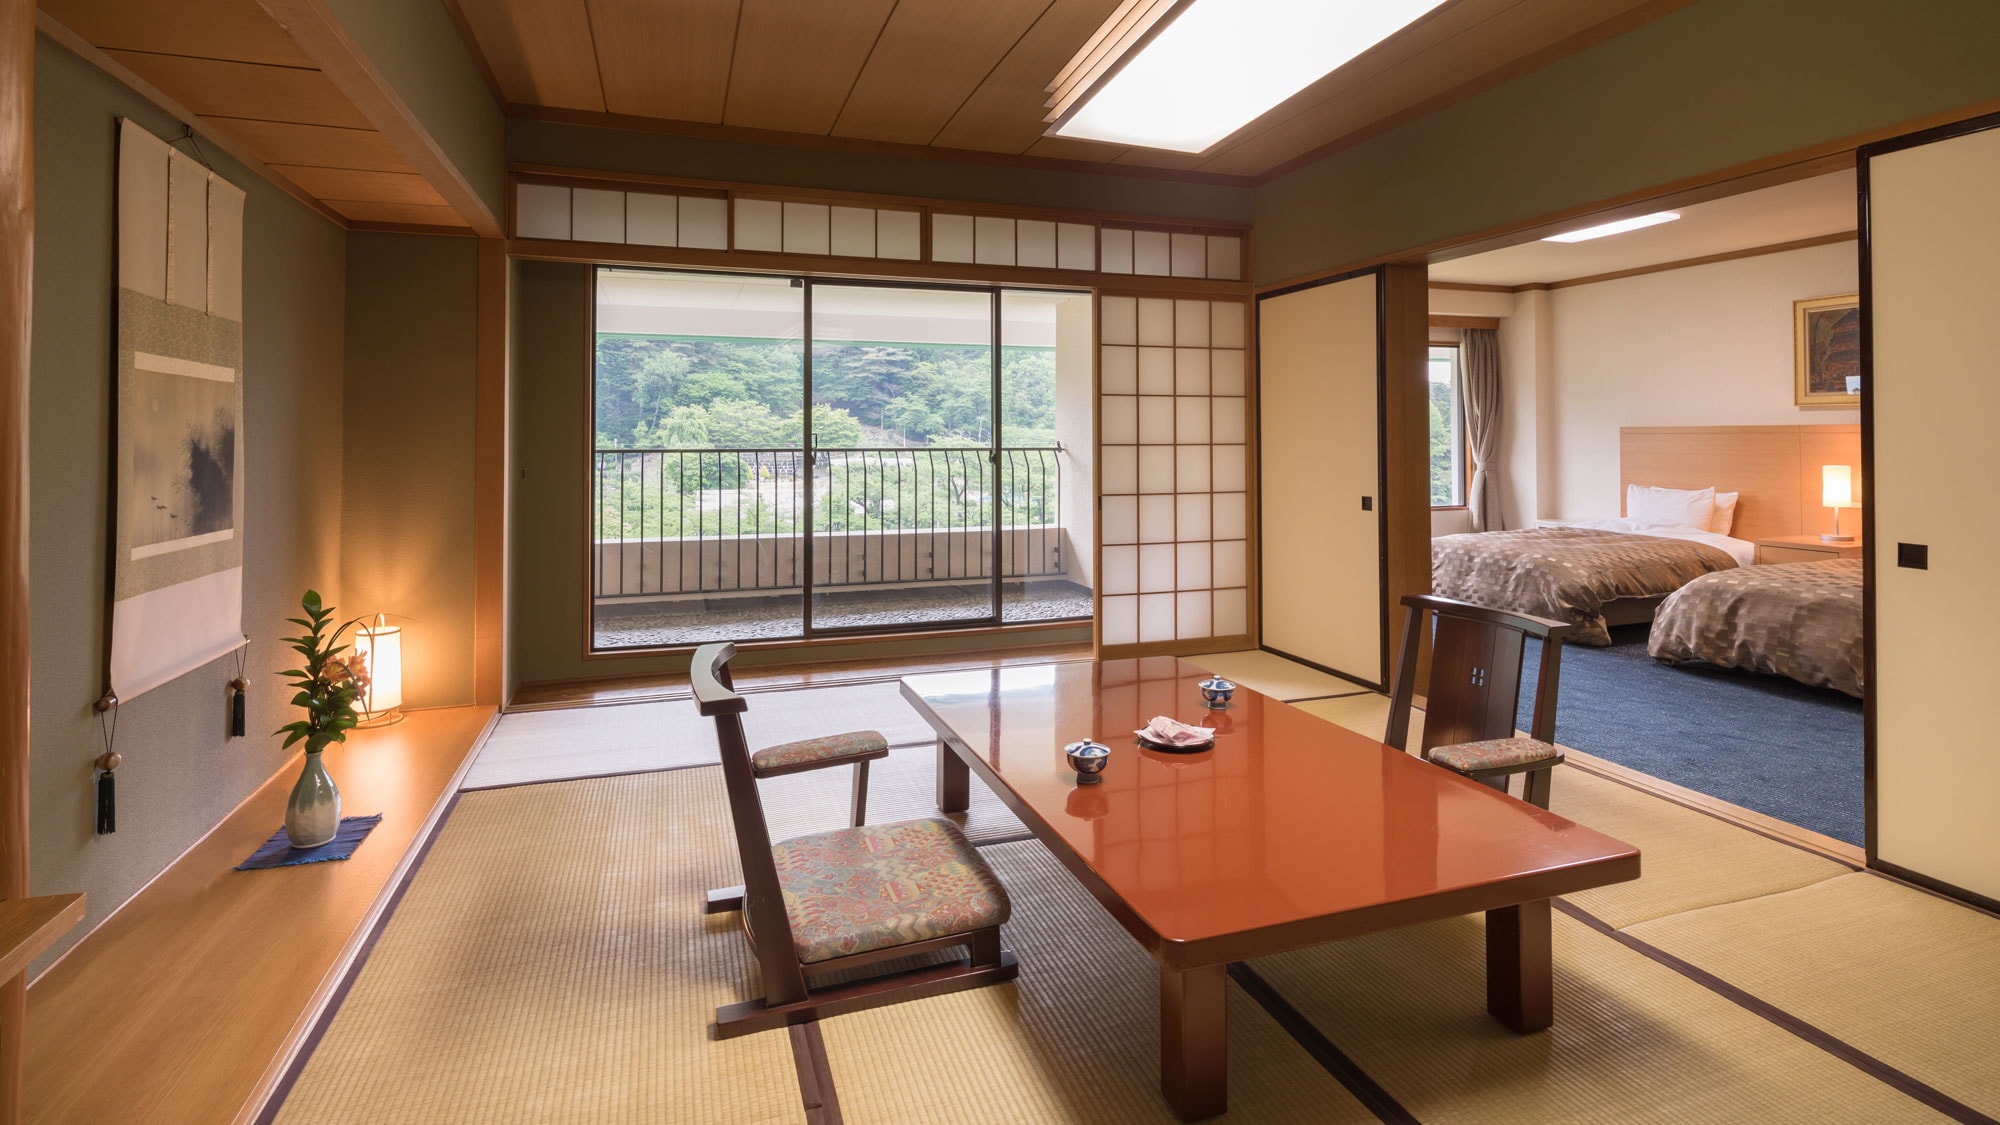 [ห้องสไตล์ญี่ปุ่น-ตะวันตก] ห้องสไตล์ญี่ปุ่น 12 เสื่อทาทามิ + ห้องเตียงแฝด